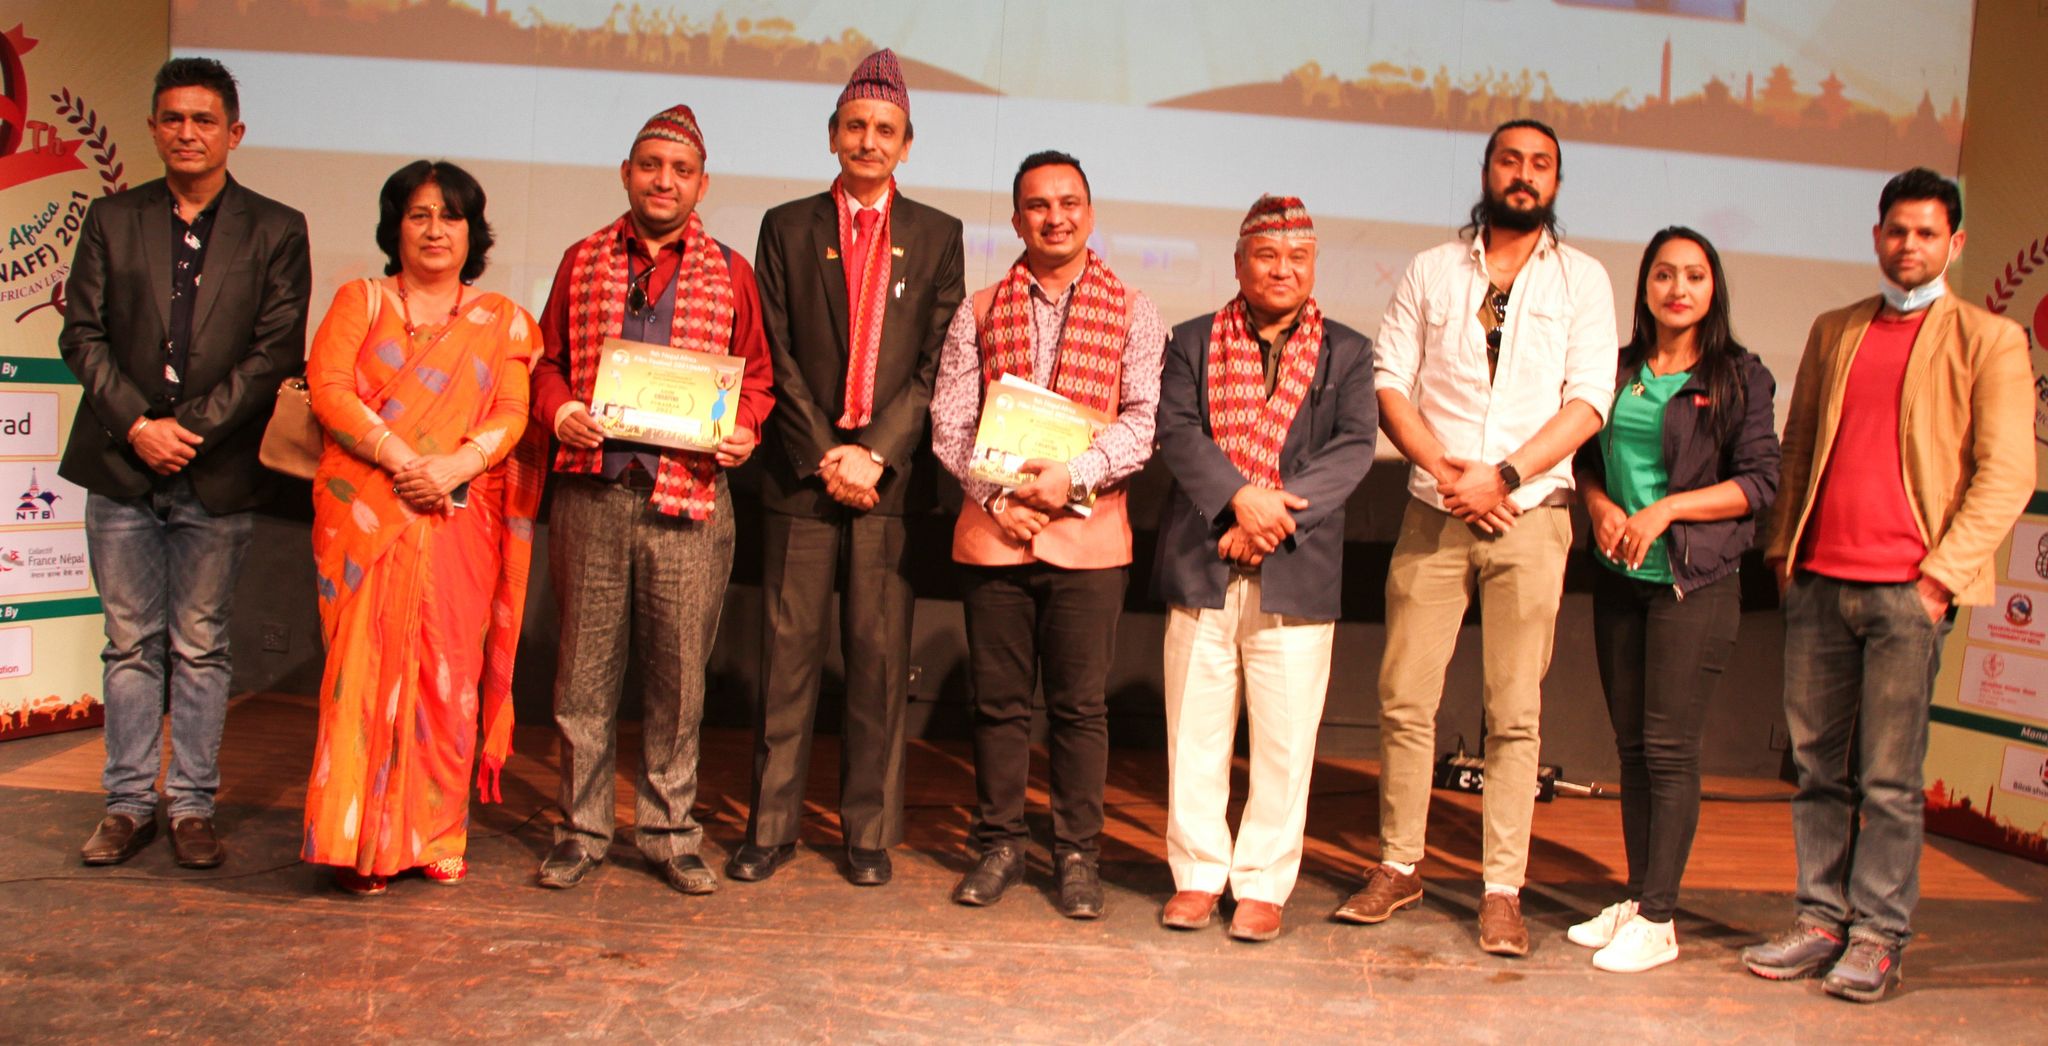 नेपाल-अफ्रिका फिल्म फेस्टिवलमा आमा, सहायक श्रीमान् र दुर्गामाण्डु उत्कृष्ट